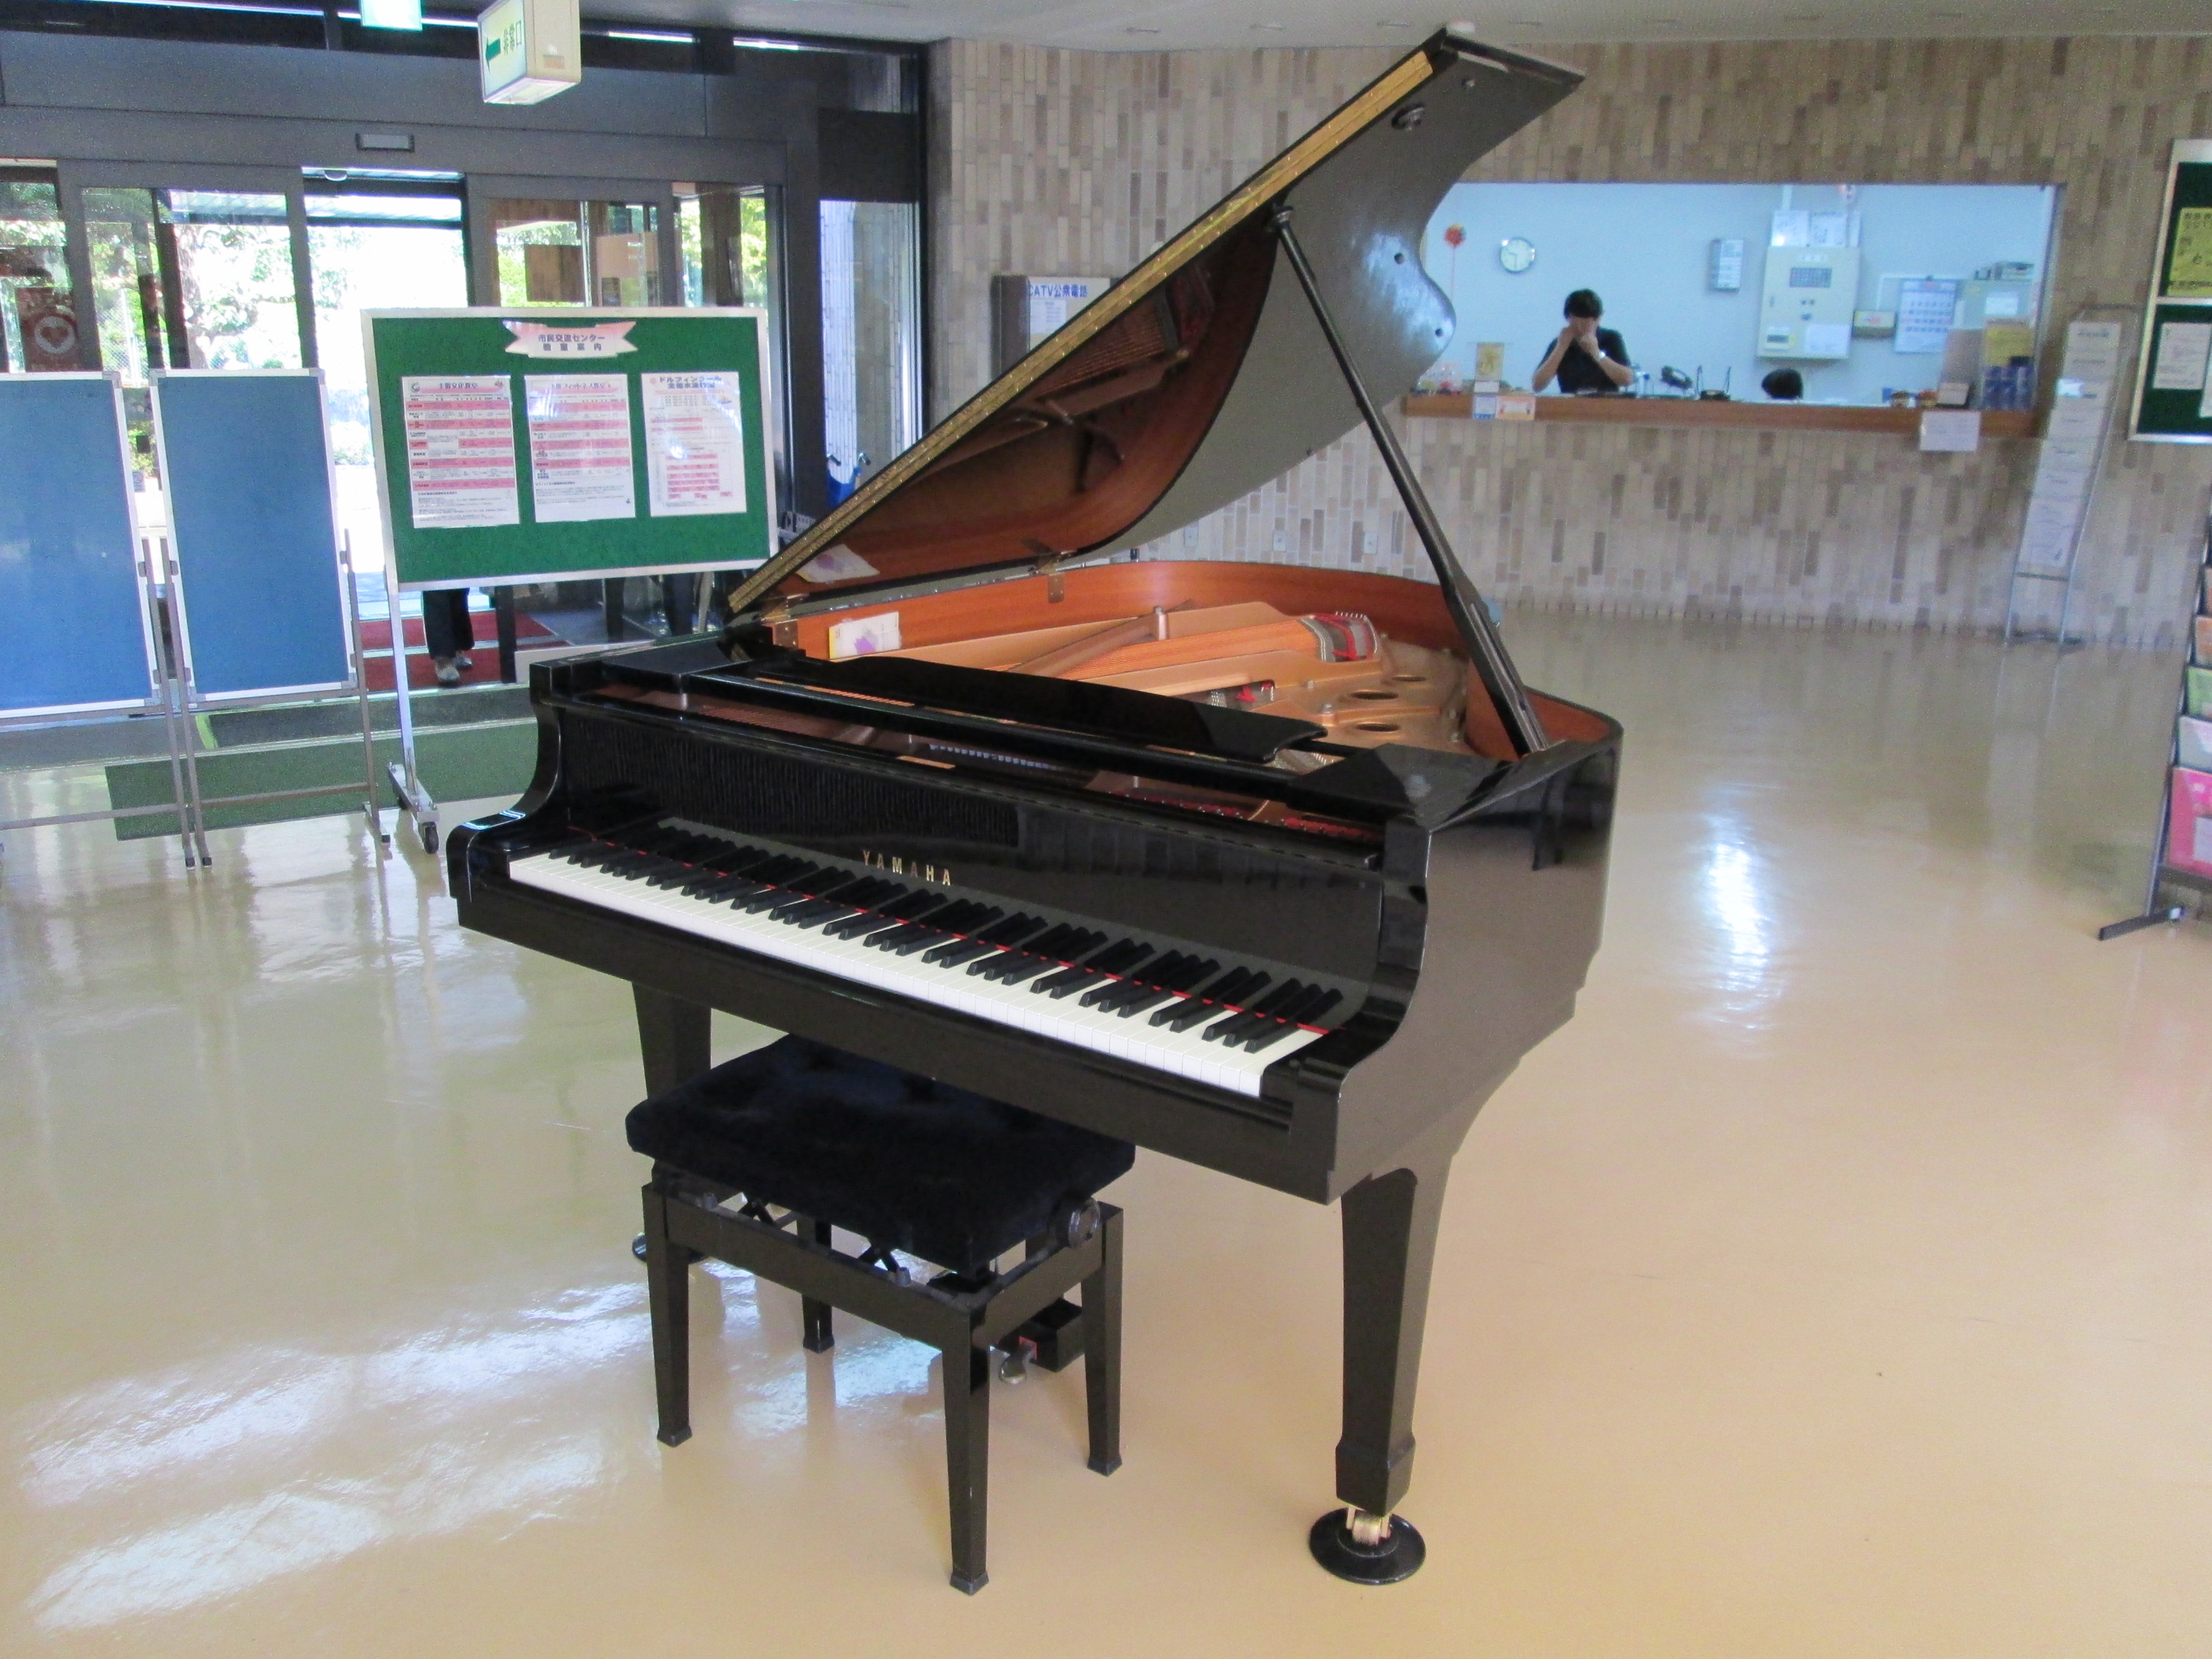 グランドピアノ 無料開放 申込み受付中 洲本市市民交流センター